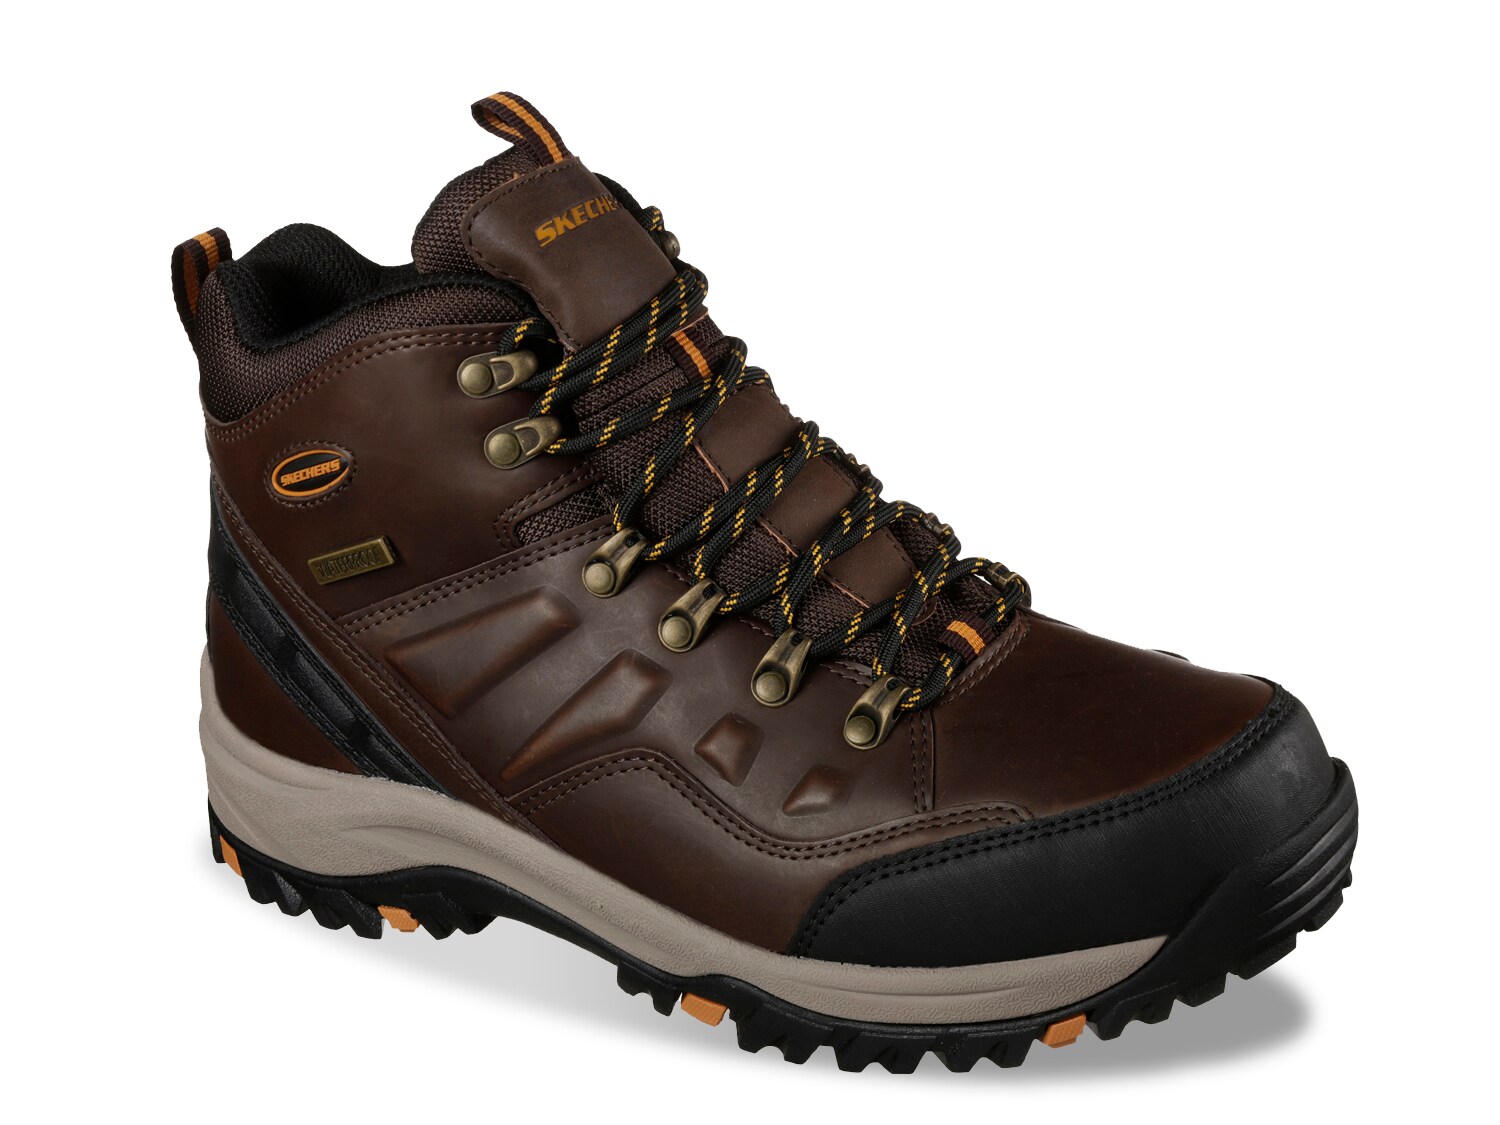 Men's Skechers Hiking Boots | DSW